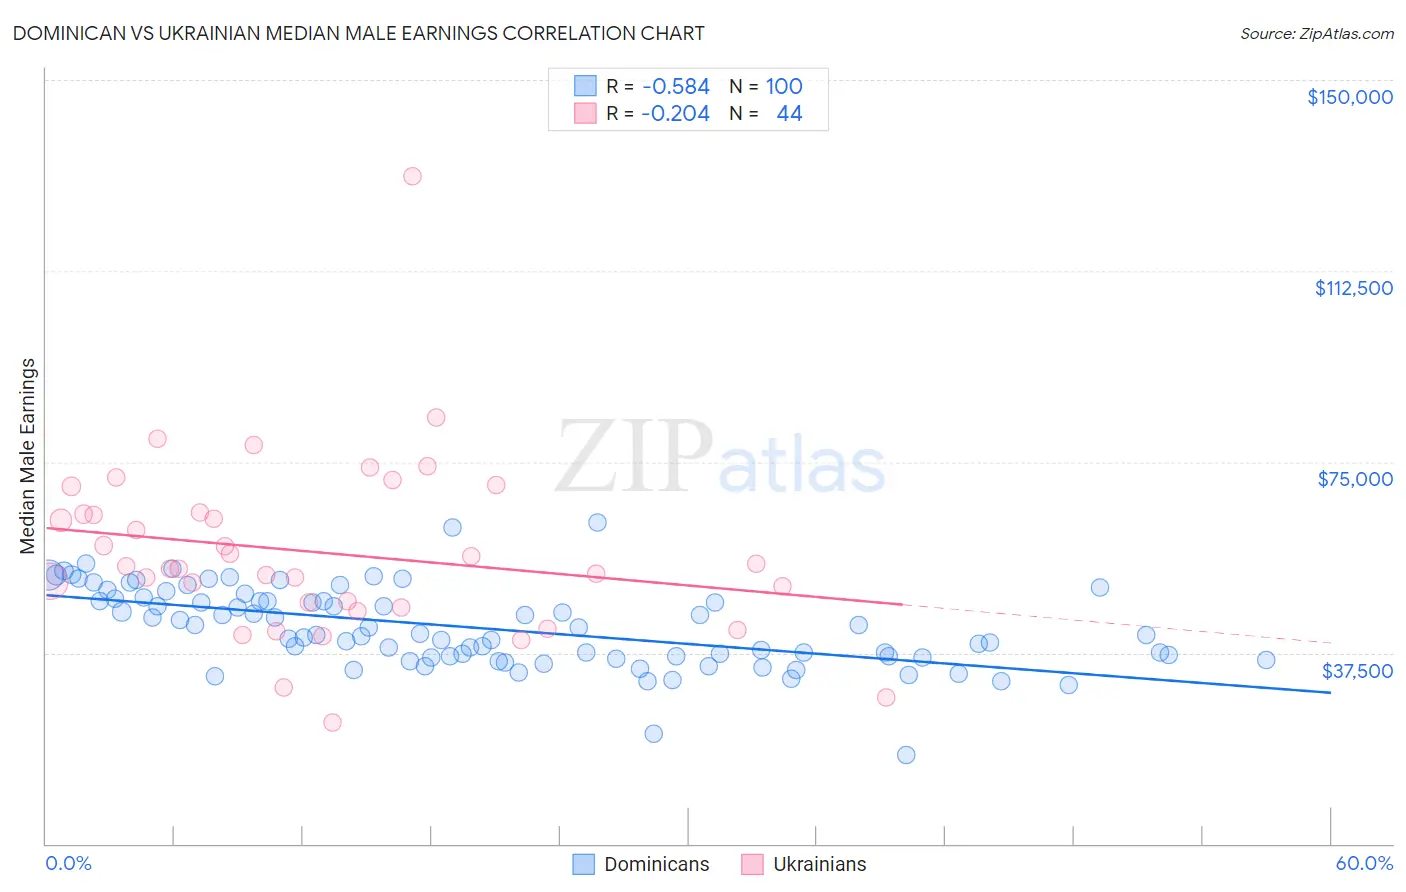 Dominican vs Ukrainian Median Male Earnings